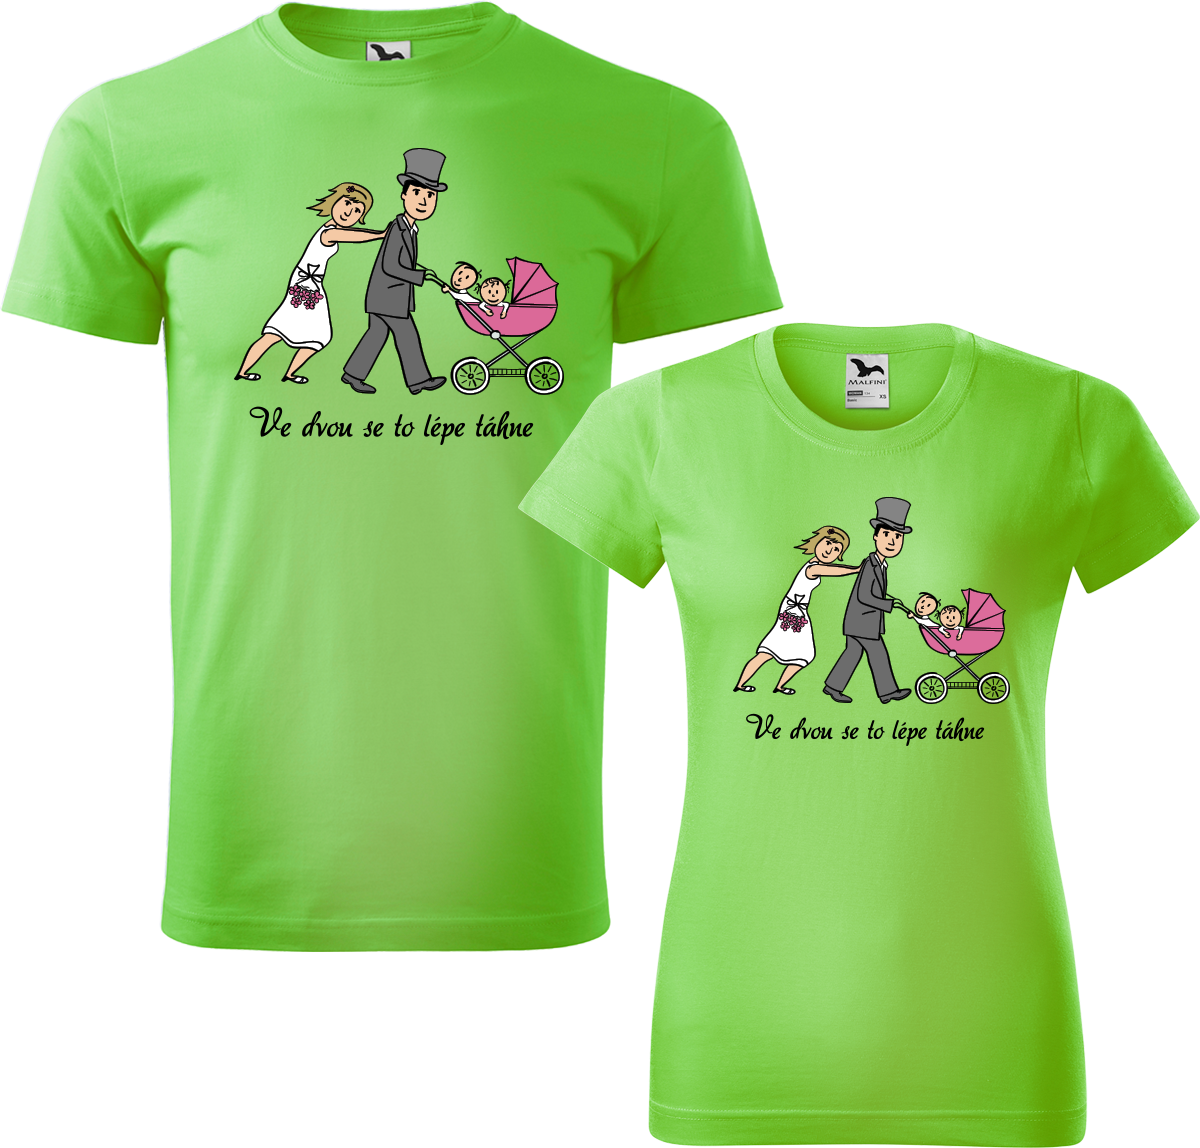 Trička pro páry - Ve dvou se to lépe táhne (kočárek) Barva: Apple Green (92), Velikost dámské tričko: S, Velikost pánské tričko: XL